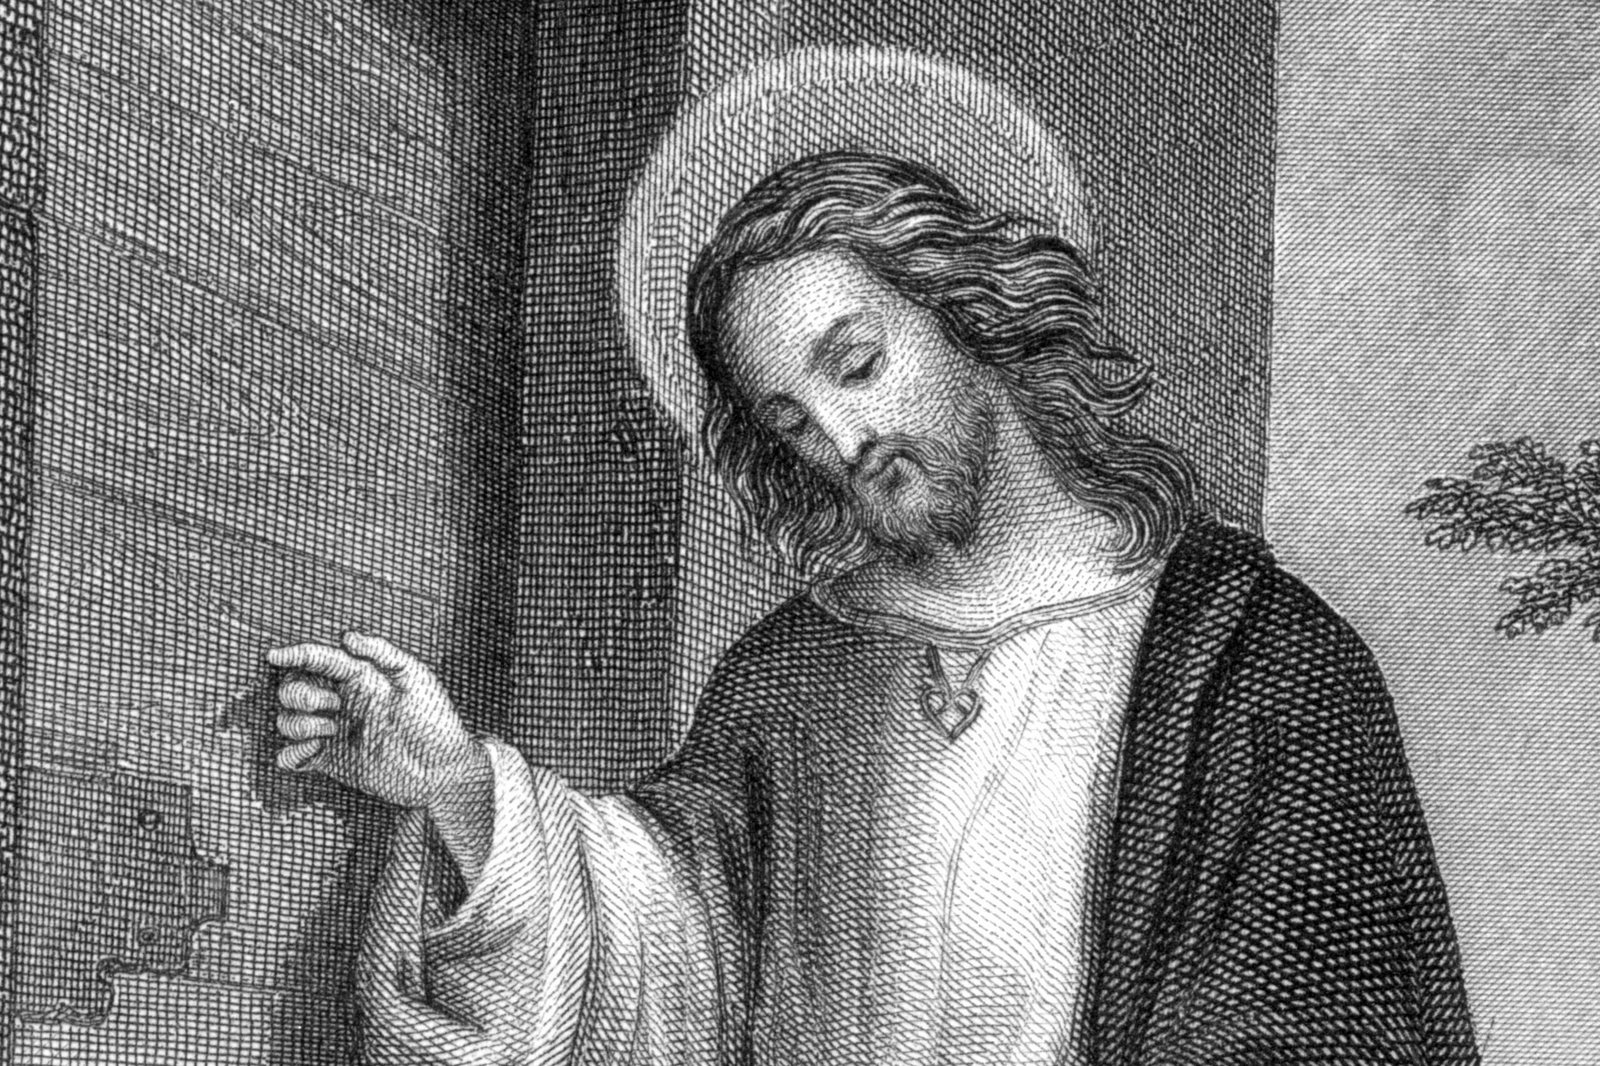 [Jesus_Christ_(German_steel_engraving)_detail.jpg]